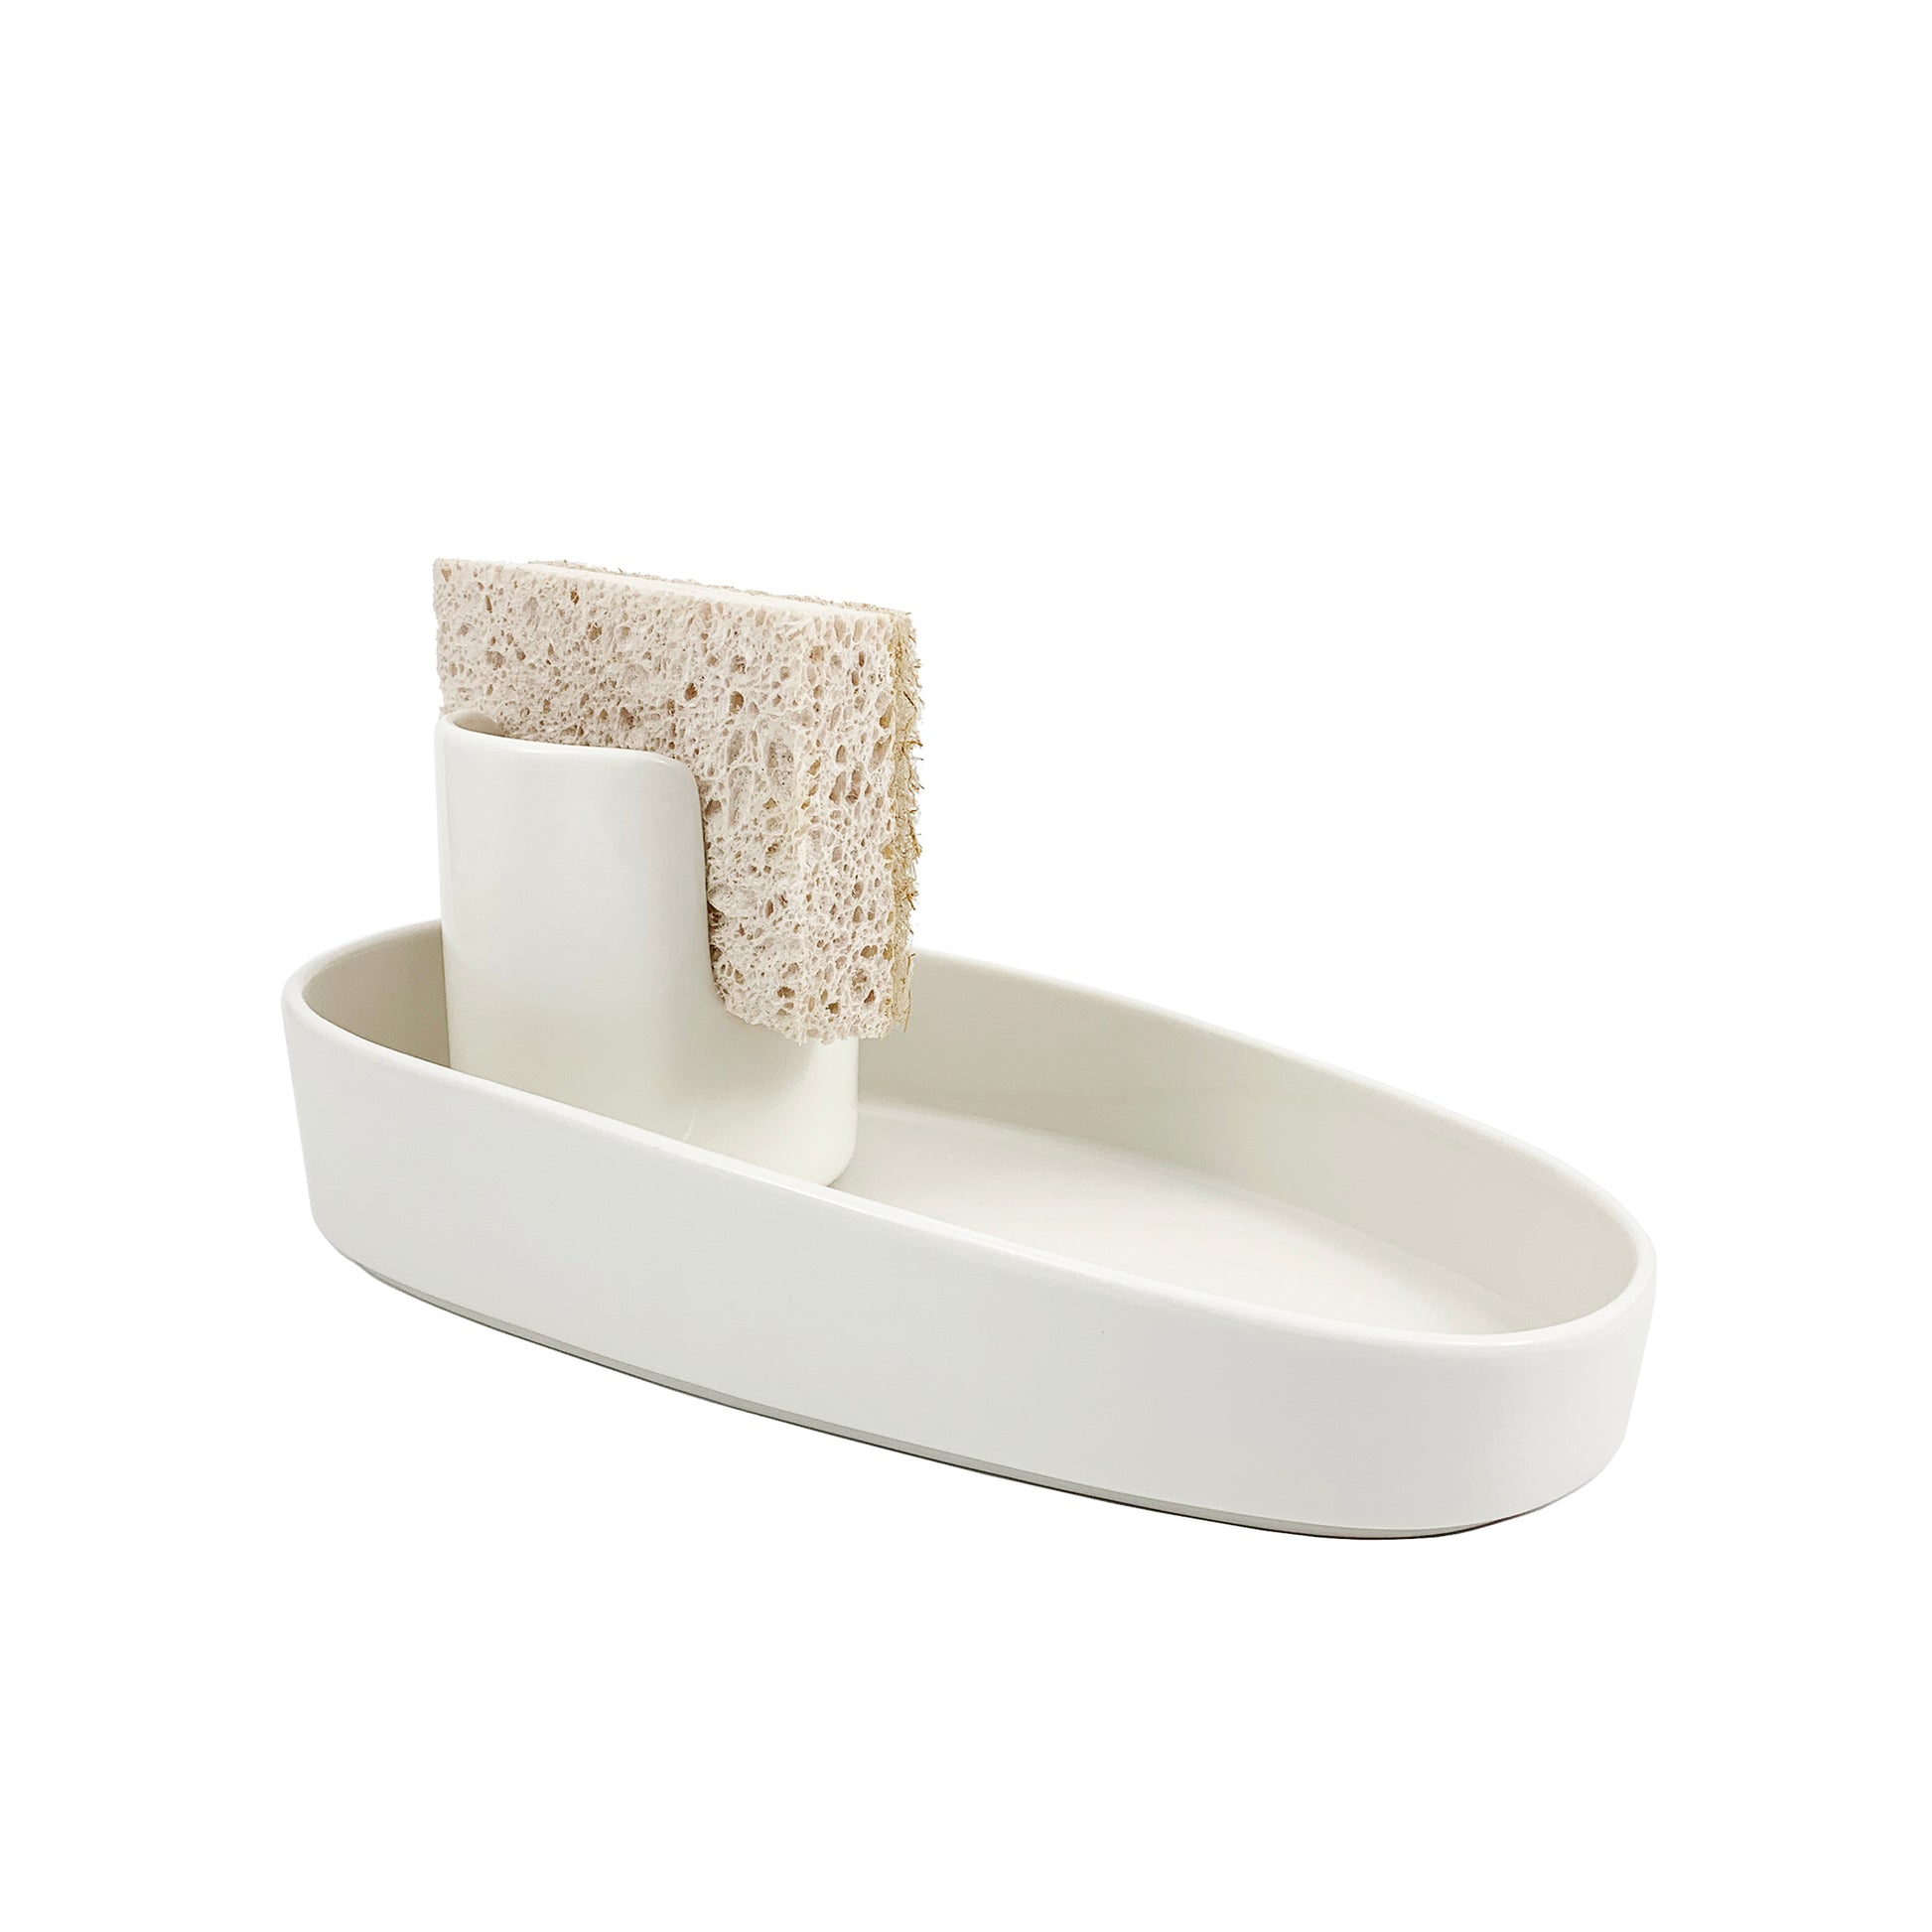 Sponge and Brush Holder Ceramic White -   Brush holder, Ceramic  artwork, Kitchen caddy